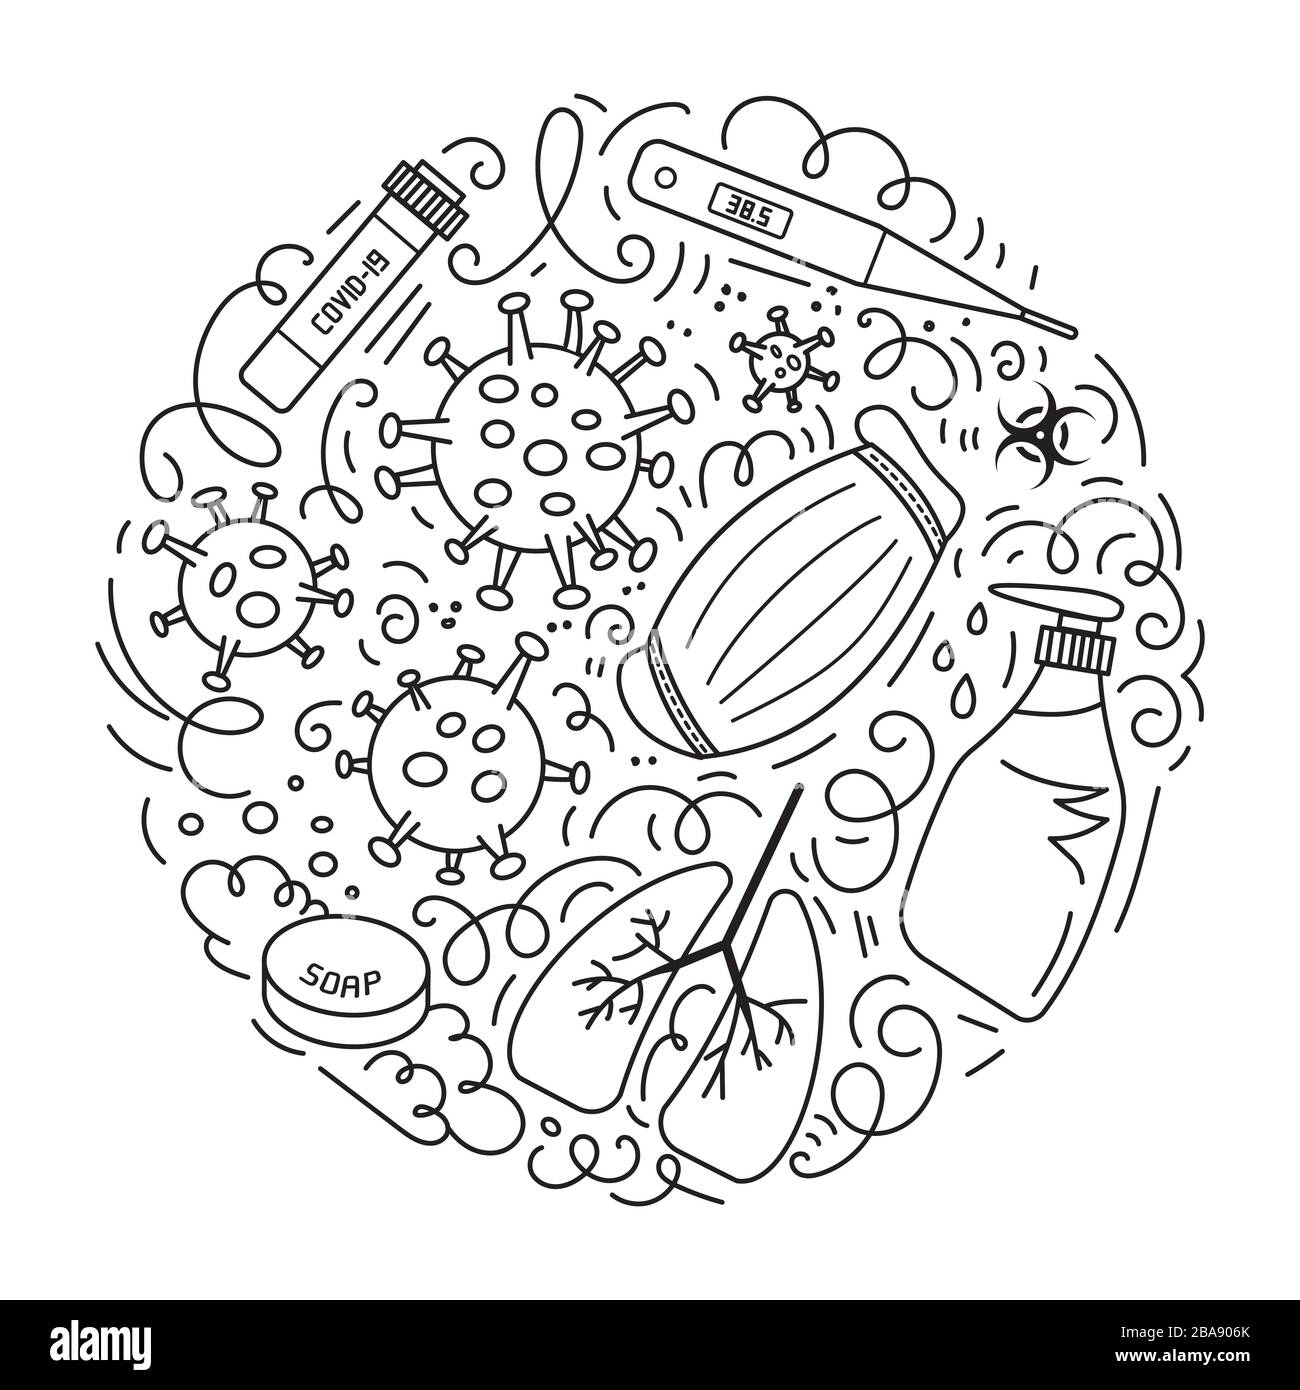 Illustrazione dei nuovi doodles vettoriali di Coronavirus 2019-nCoV. Design rotondo con elementi disegnati a mano come il segno di quarantena, maschera respiratore, analisi del sangue, gel igienizzante per le mani, termometro, sapone e altro ancora. Illustrazione Vettoriale